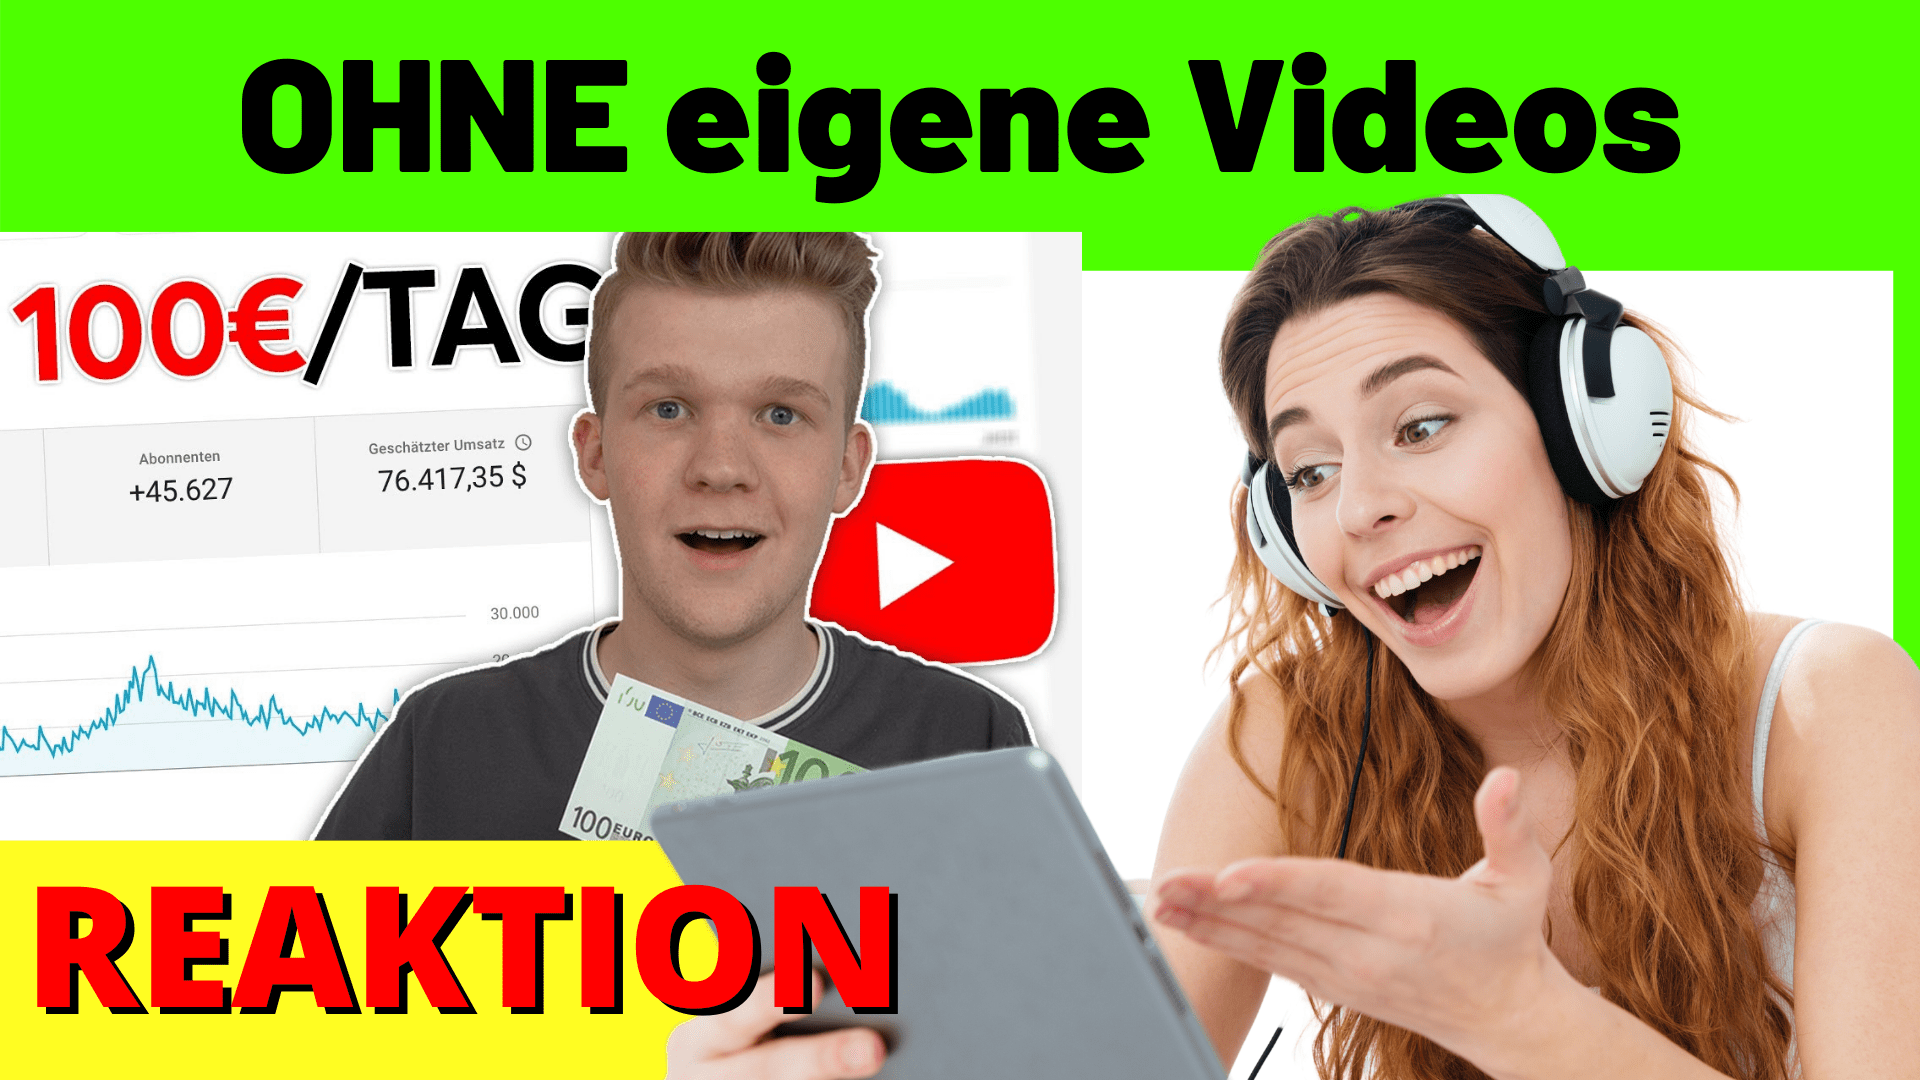 So verdienst du 100€ am Tag mit YouTube OHNE eigene Videos